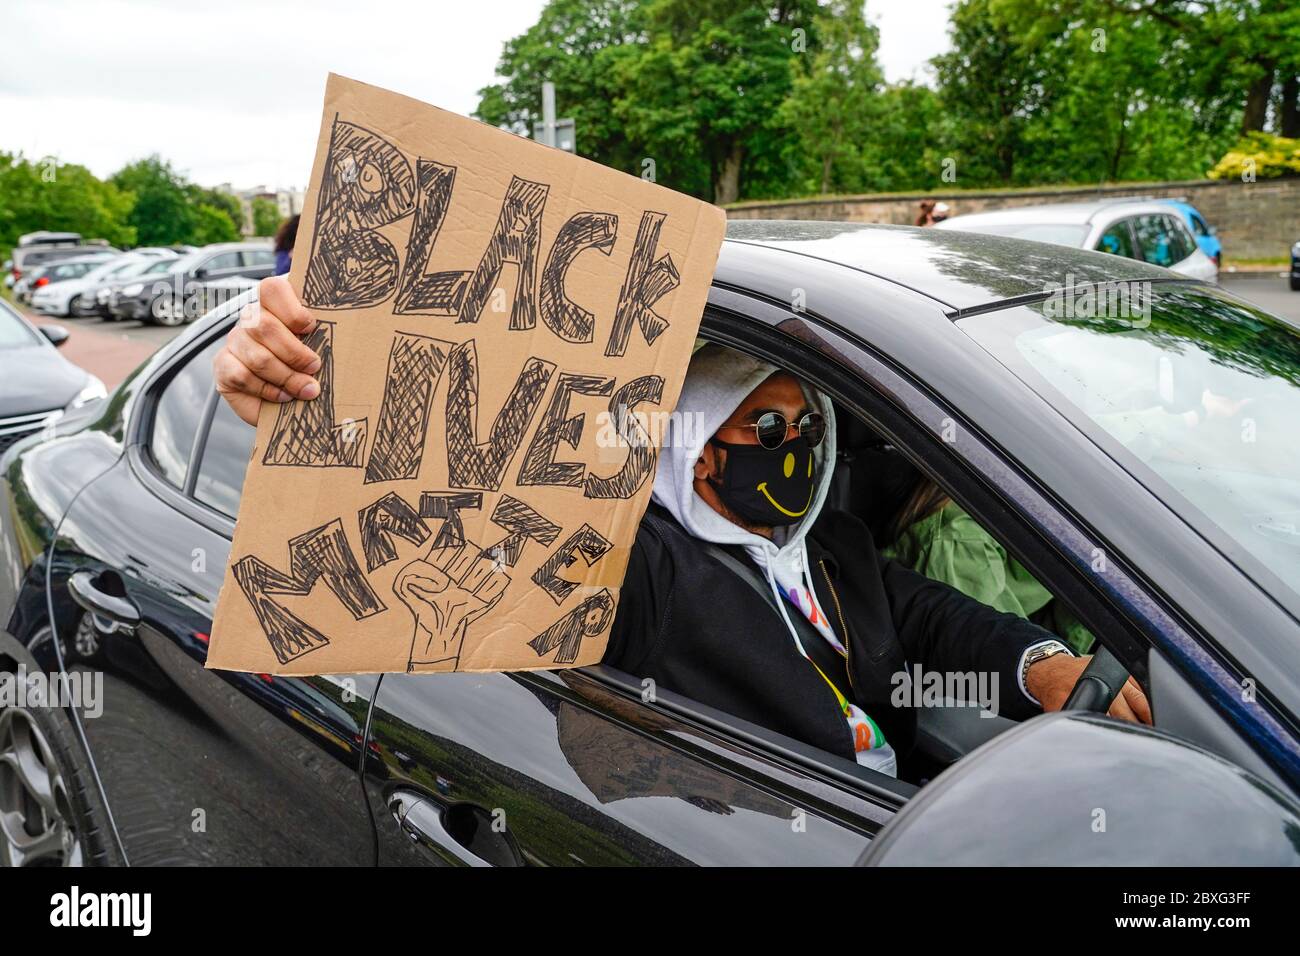 Edimbourg, Ecosse, Royaume-Uni. 7 juin 2020. Black Lives Matter manifestation au parc Holyrood à Édimbourg. Les conducteurs ont montré leur soutien dans un convoi de voitures privées. Iain Masterton/Alay Live News Banque D'Images